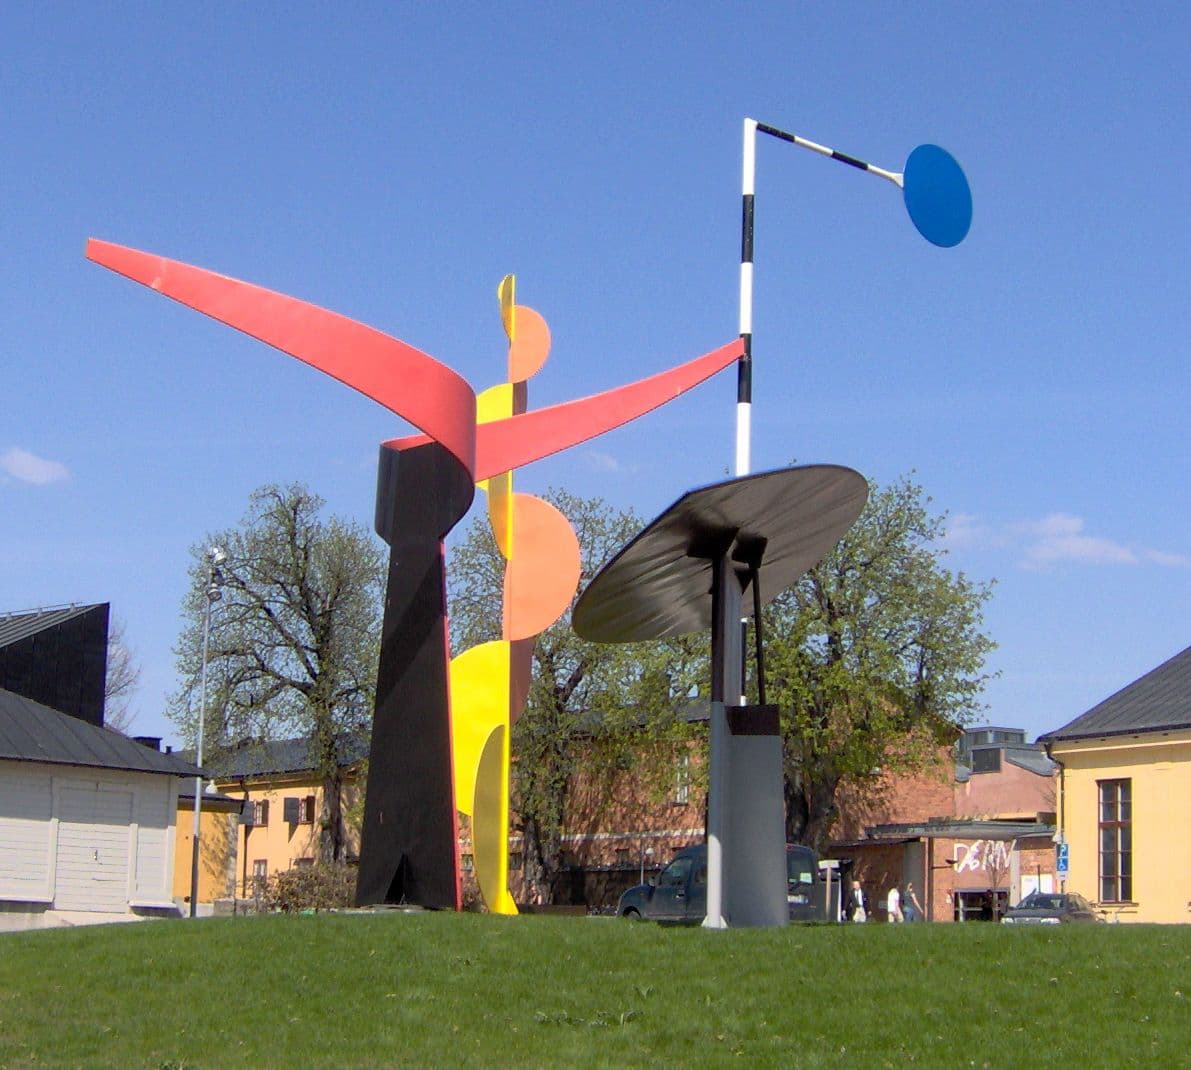 Fig. 3 - Alexander Calder, los cuatro elementos, zona exterior del Museo de Arte Moderno de Estocolmo, Suecia, 2006. Fotos: No se proporcionó un autor legible por máquina. Kalle1~commonswiki asumido (basado en reclamos de derechos de autor)., Dominio publico, a través de Wikimedia Commons.